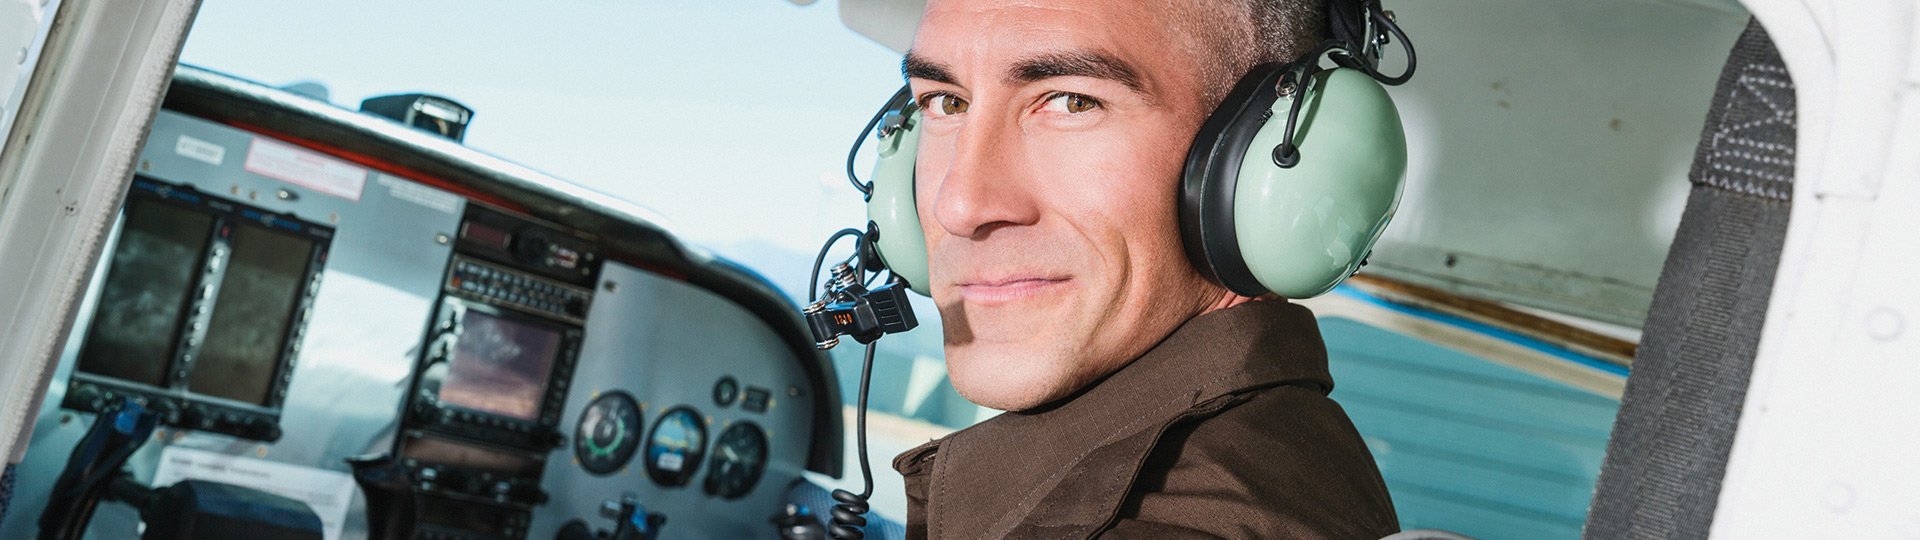 Luftfahrtversicherung - Pilot am Steuer